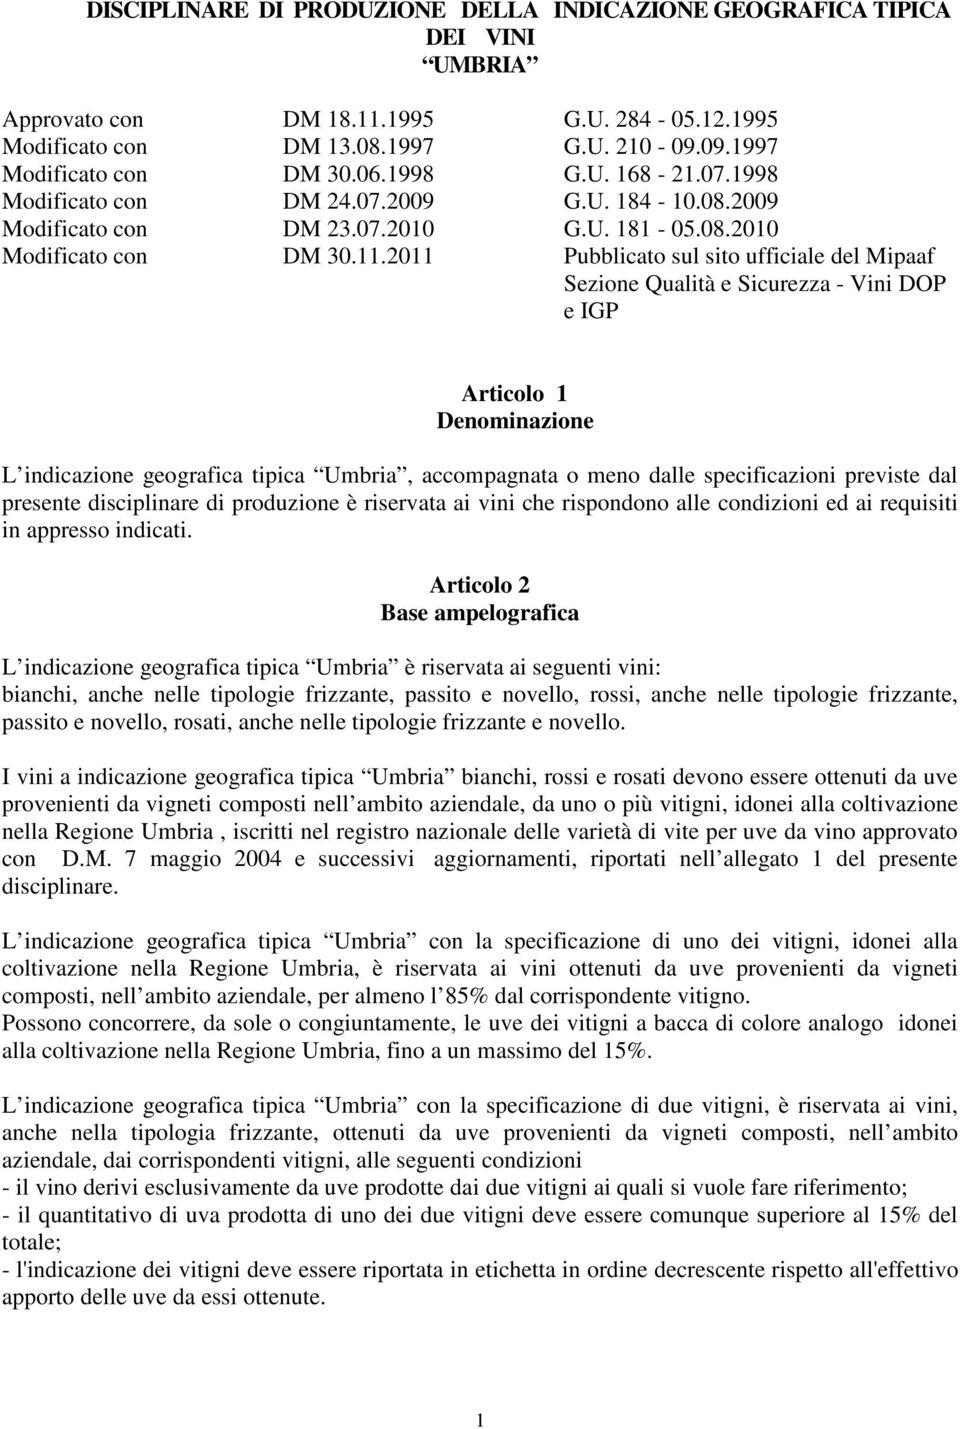 2011 Pubblicato sul sito ufficiale del Mipaaf Sezione Qualità e Sicurezza - Vini DOP e IGP Articolo 1 Denominazione L indicazione geografica tipica Umbria, accompagnata o meno dalle specificazioni